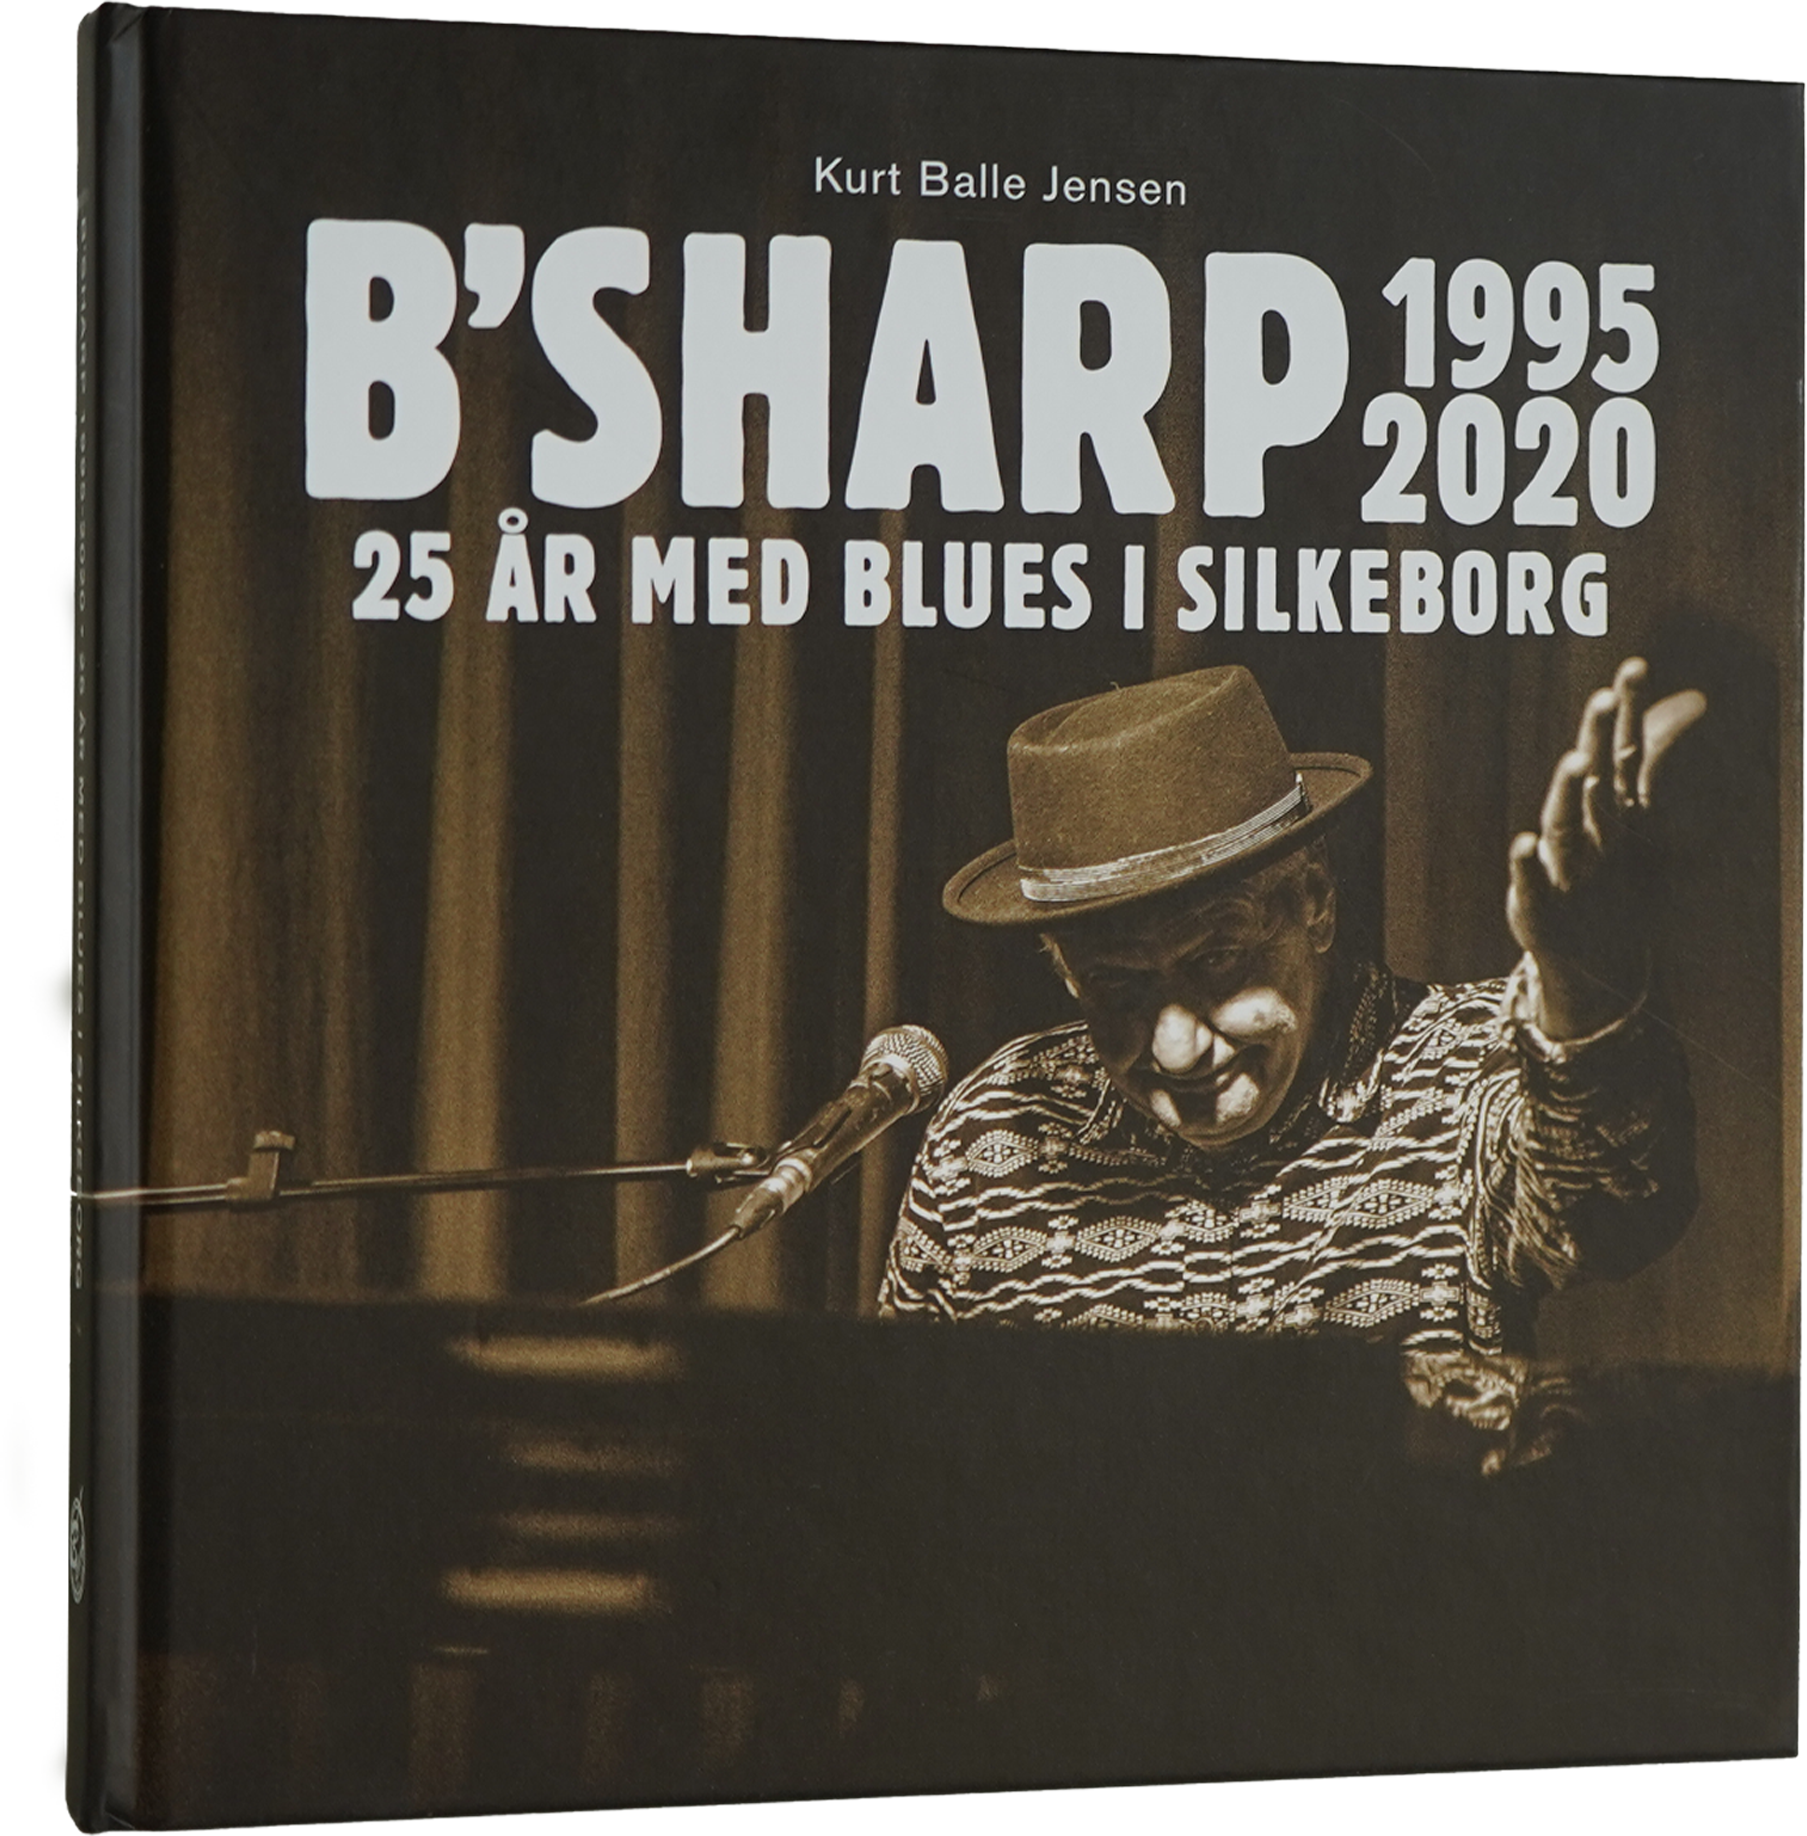 B’Sharp: 25år med Blues i Silkeborg